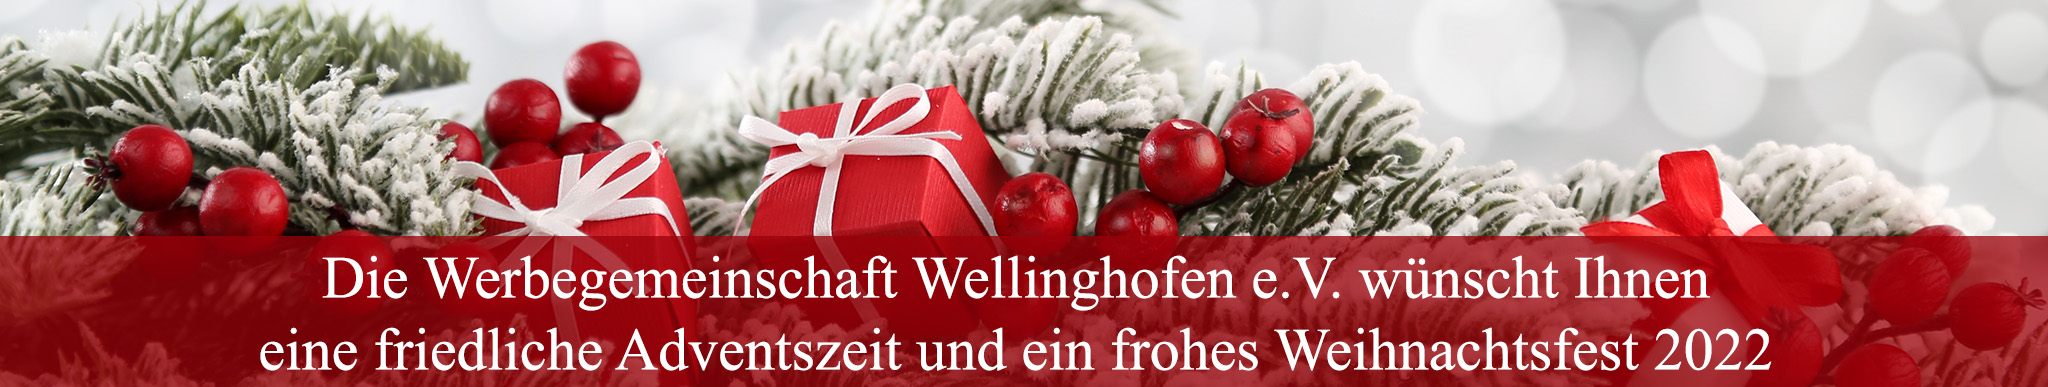 Eine friedliche Adventszeit und frohe Weihnachtstage wünscht Ihnen die Werbegemeinschaft Wellinghofen